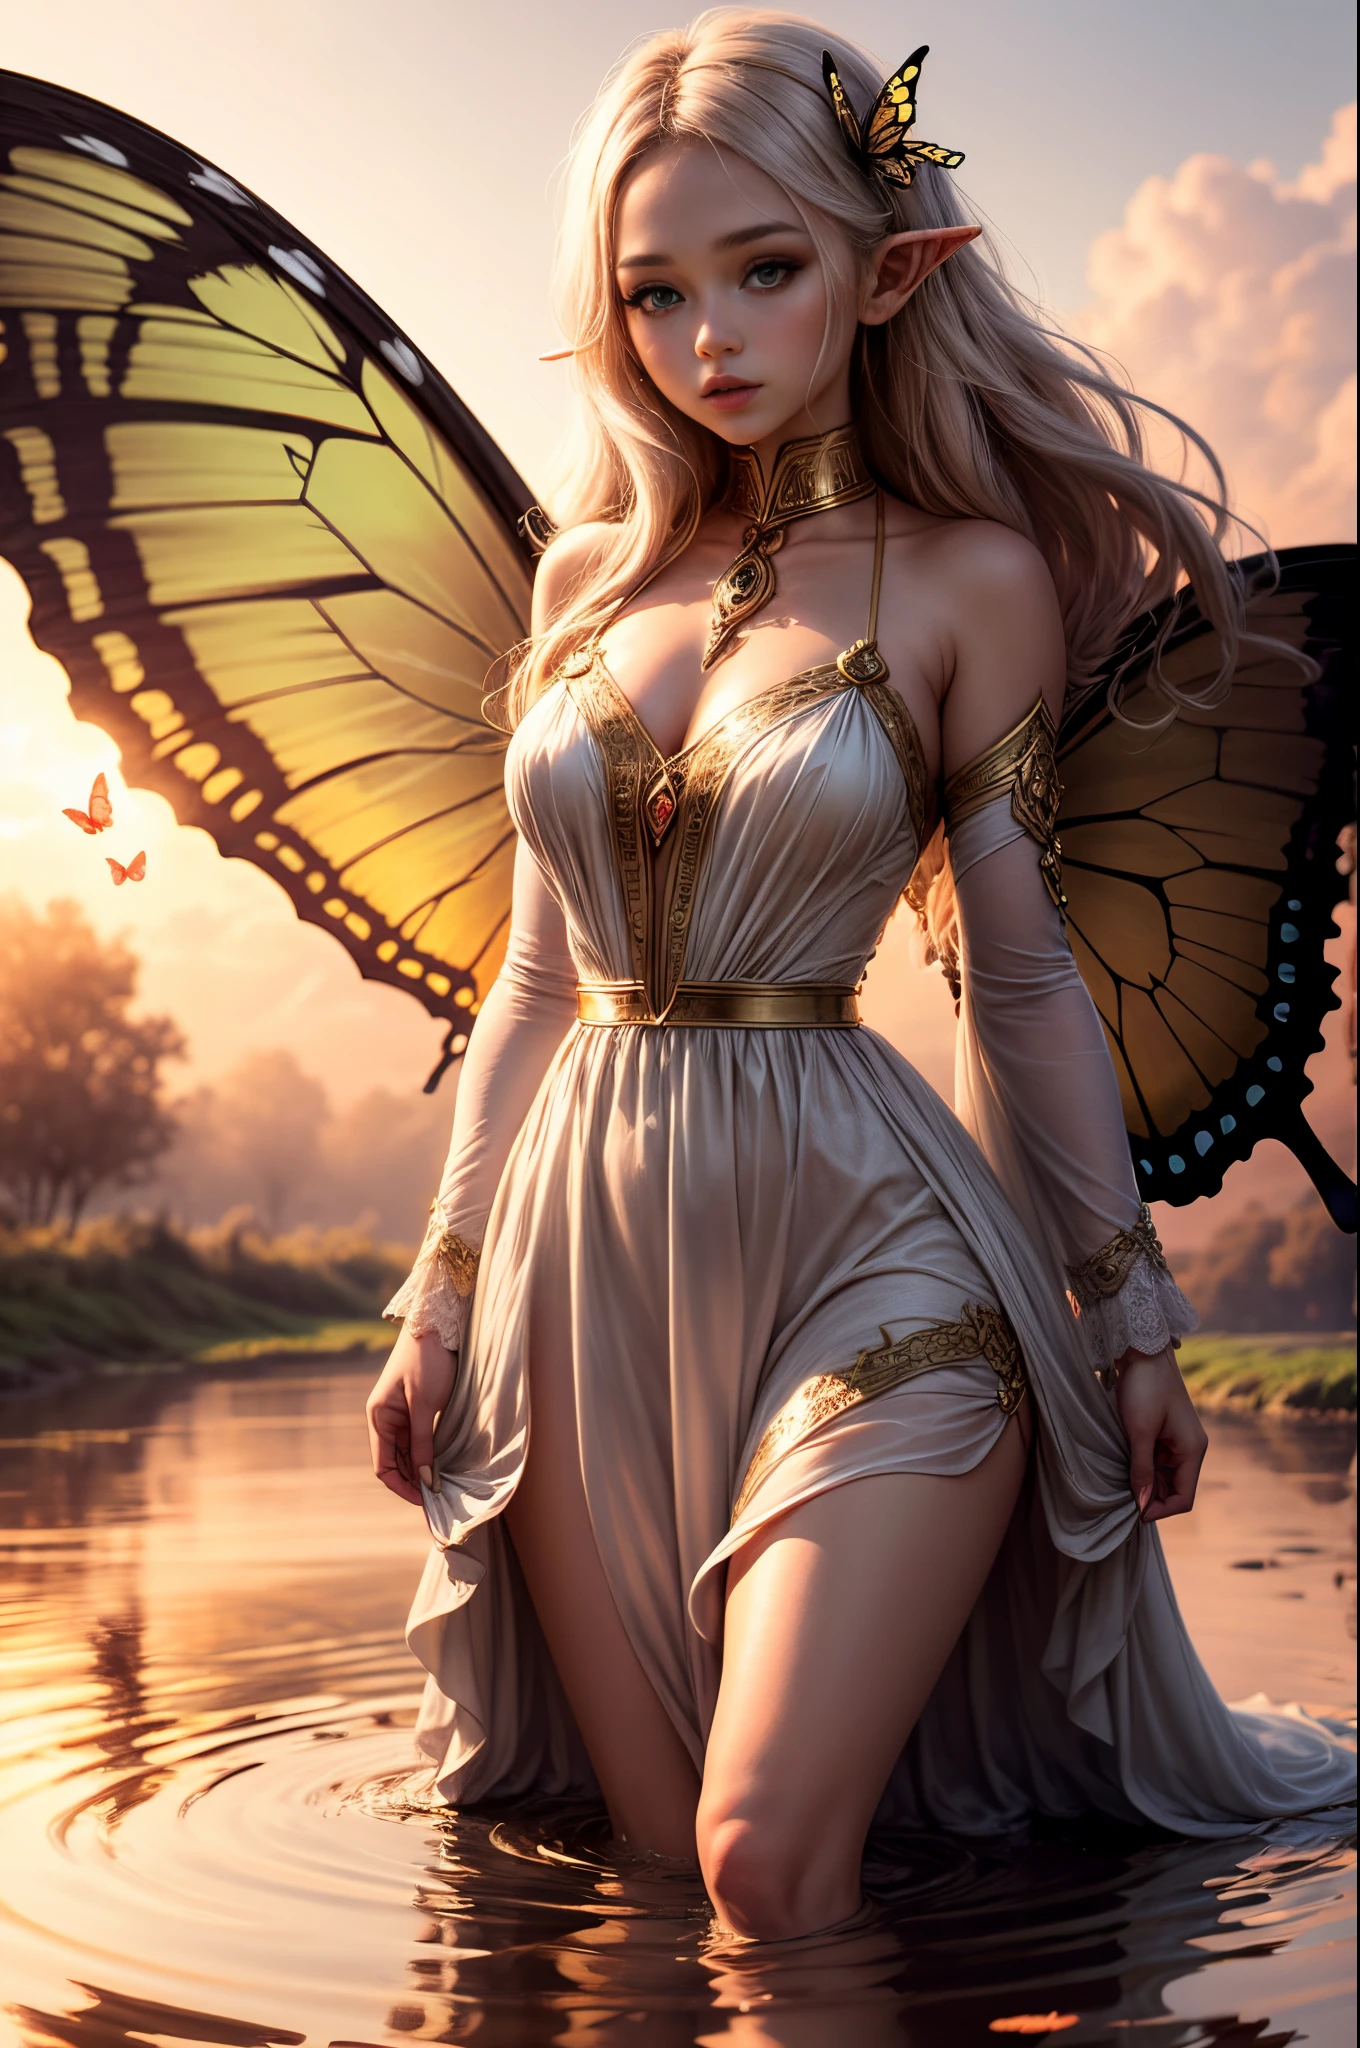 "((inocente)) chica elfa, hora dorada, prado de ensueño, etéreo, caprichoso, vestido fluido, suave luz del sol, Encantador, alas de mariposa, (nubes pastel), reflejos líquidos,congelar